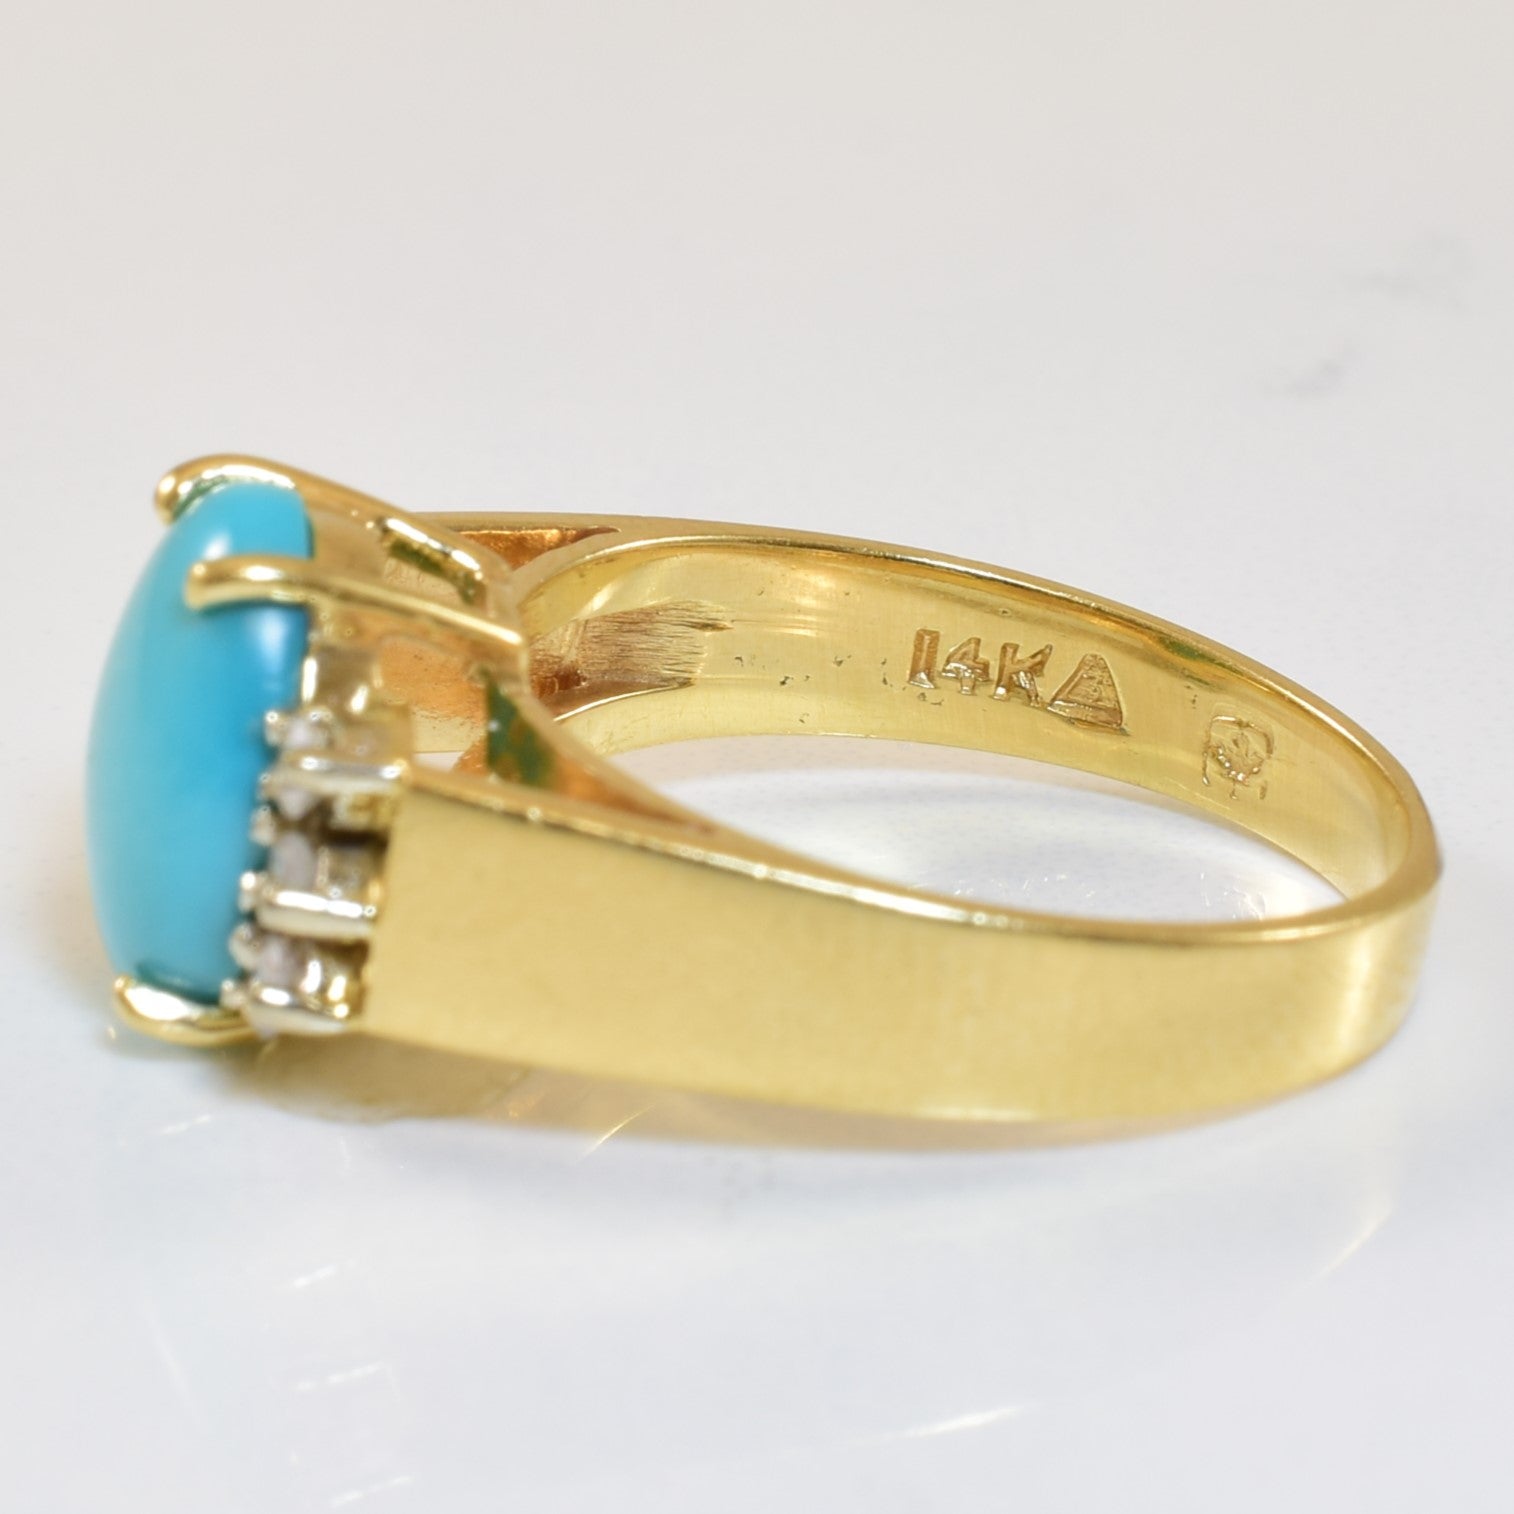 Turquoise & Diamond Ring | 1.26ct, 0.08ctw | SZ 5.75 |